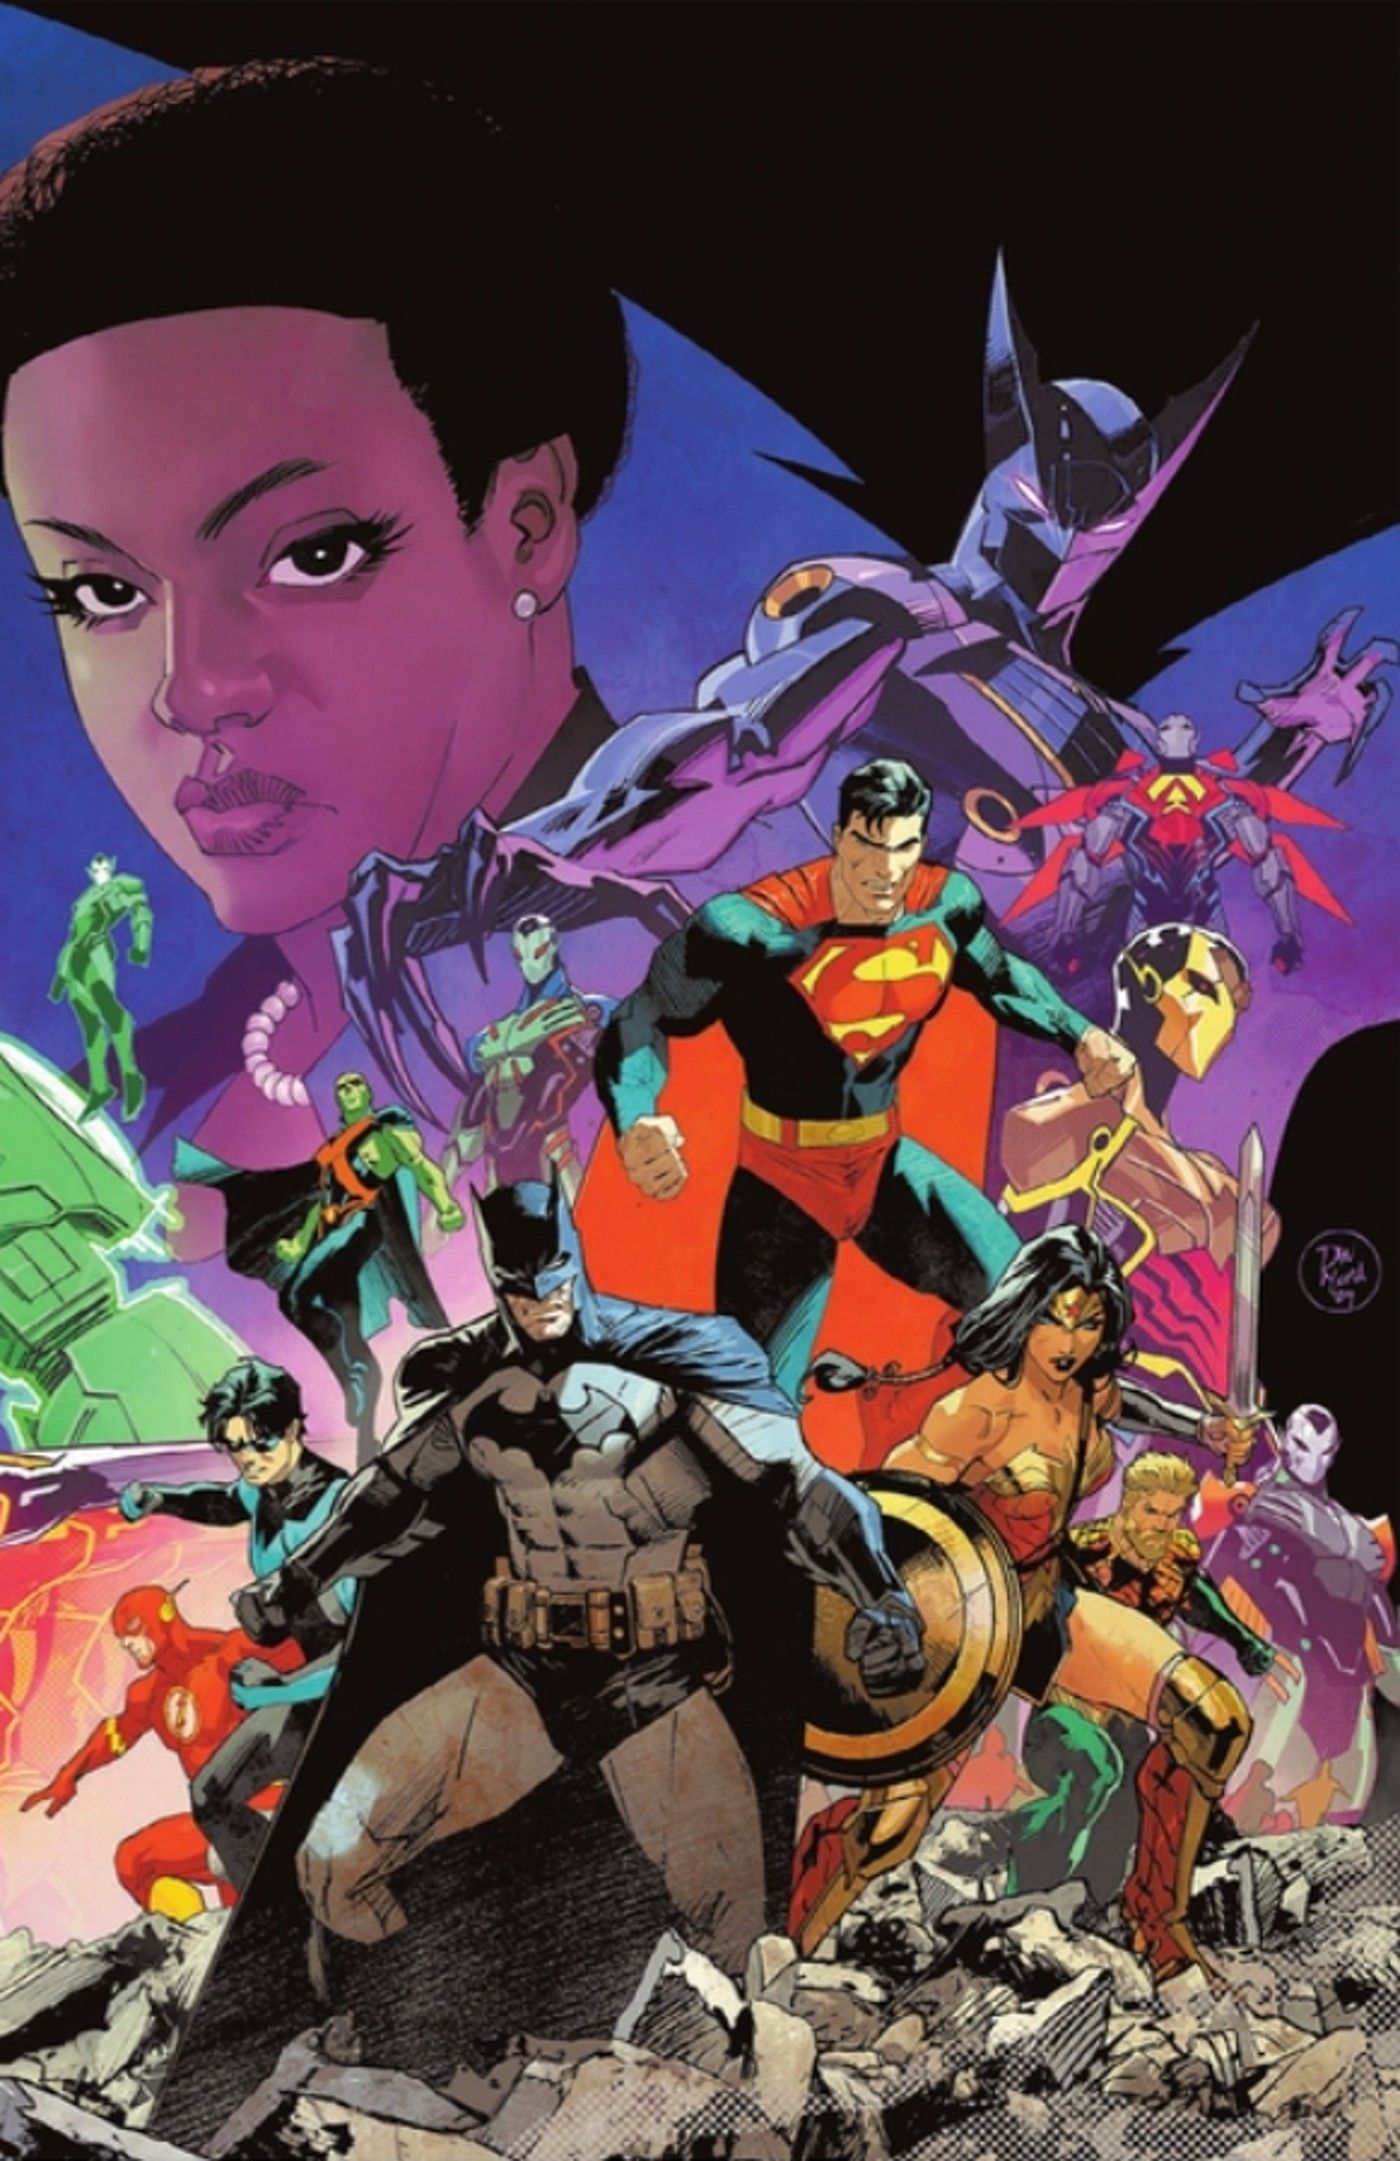 Capa do Poder Absoluto 1 com Batman e a Liga da Justiça